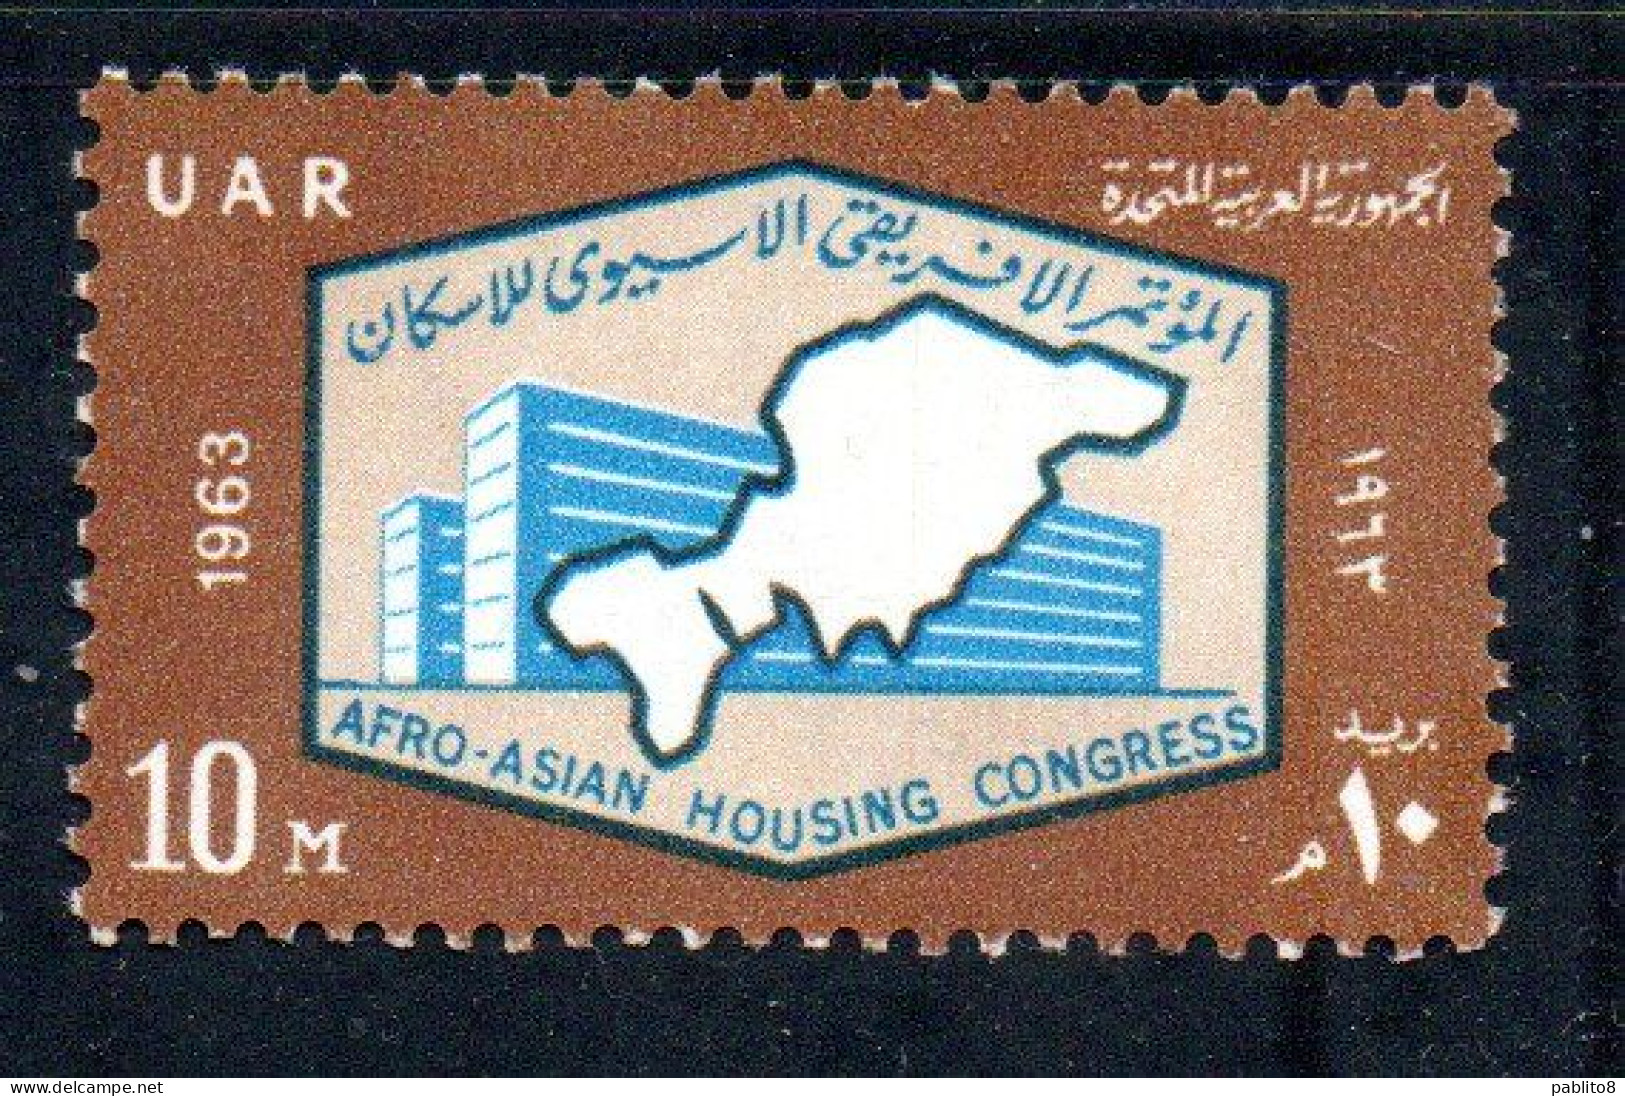 UAR EGYPT EGITTO 1963 AFRO-ASIAN HOUSING CONGRESS MODERN BUILDING AND MAP 10m MNH - Ongebruikt